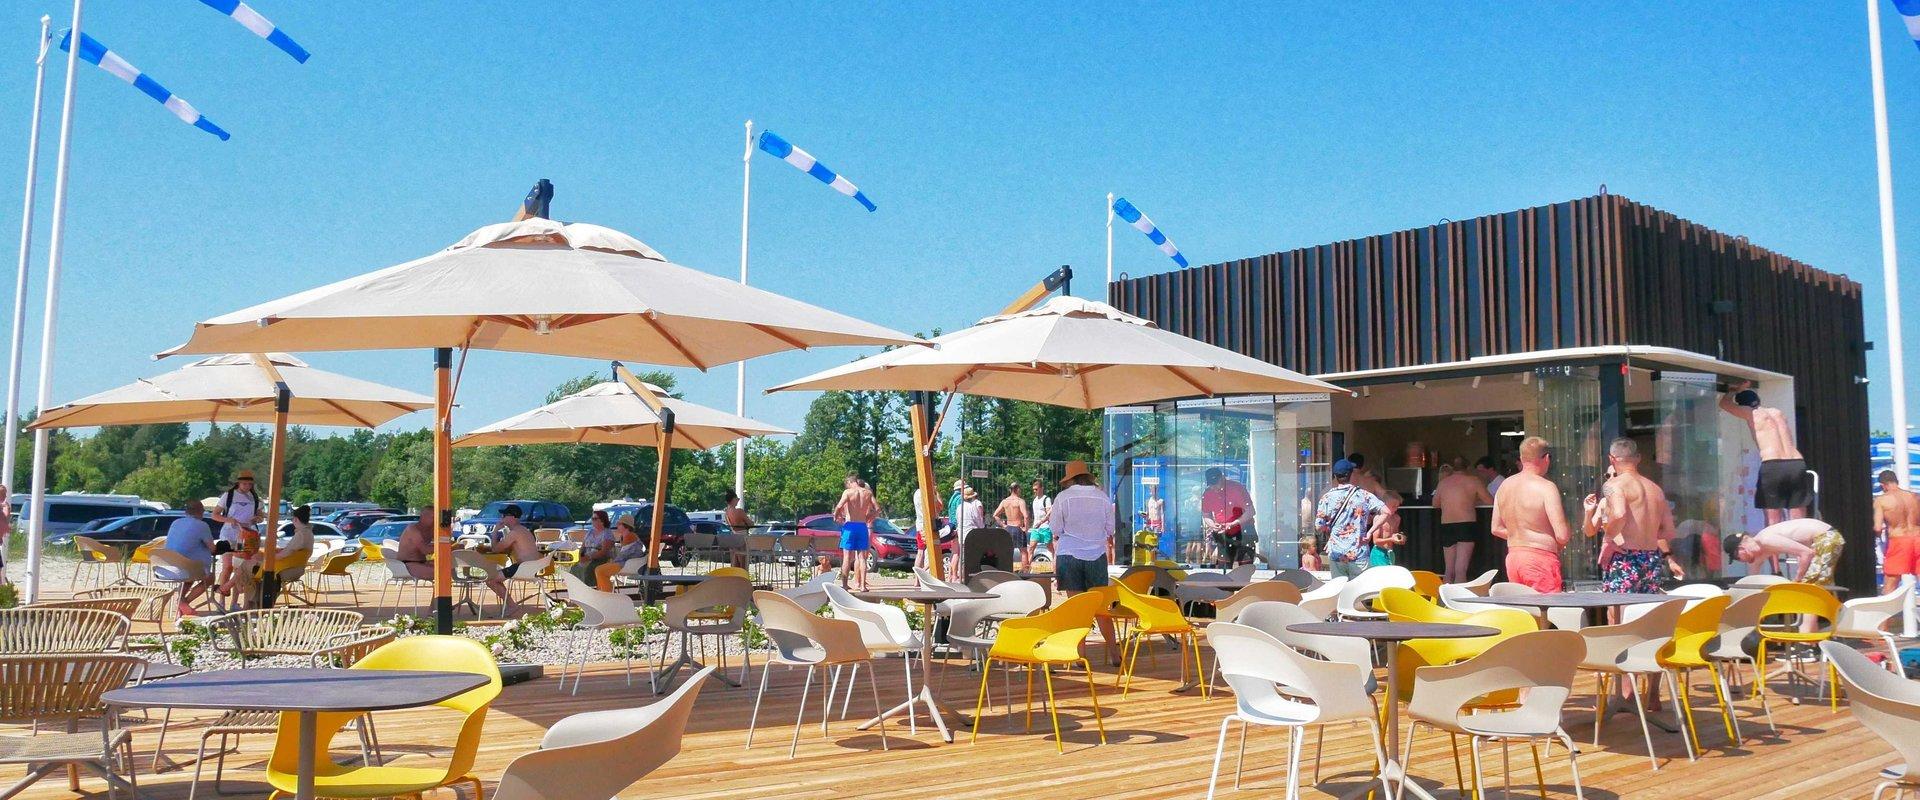 Wir begrüßen Sie in einem neuen Strandrestaurant in Pärnu, sozusagen mit den Füßen im Sand. Dort erwarten Sie schmackhafte Gerichte und erfrischende C